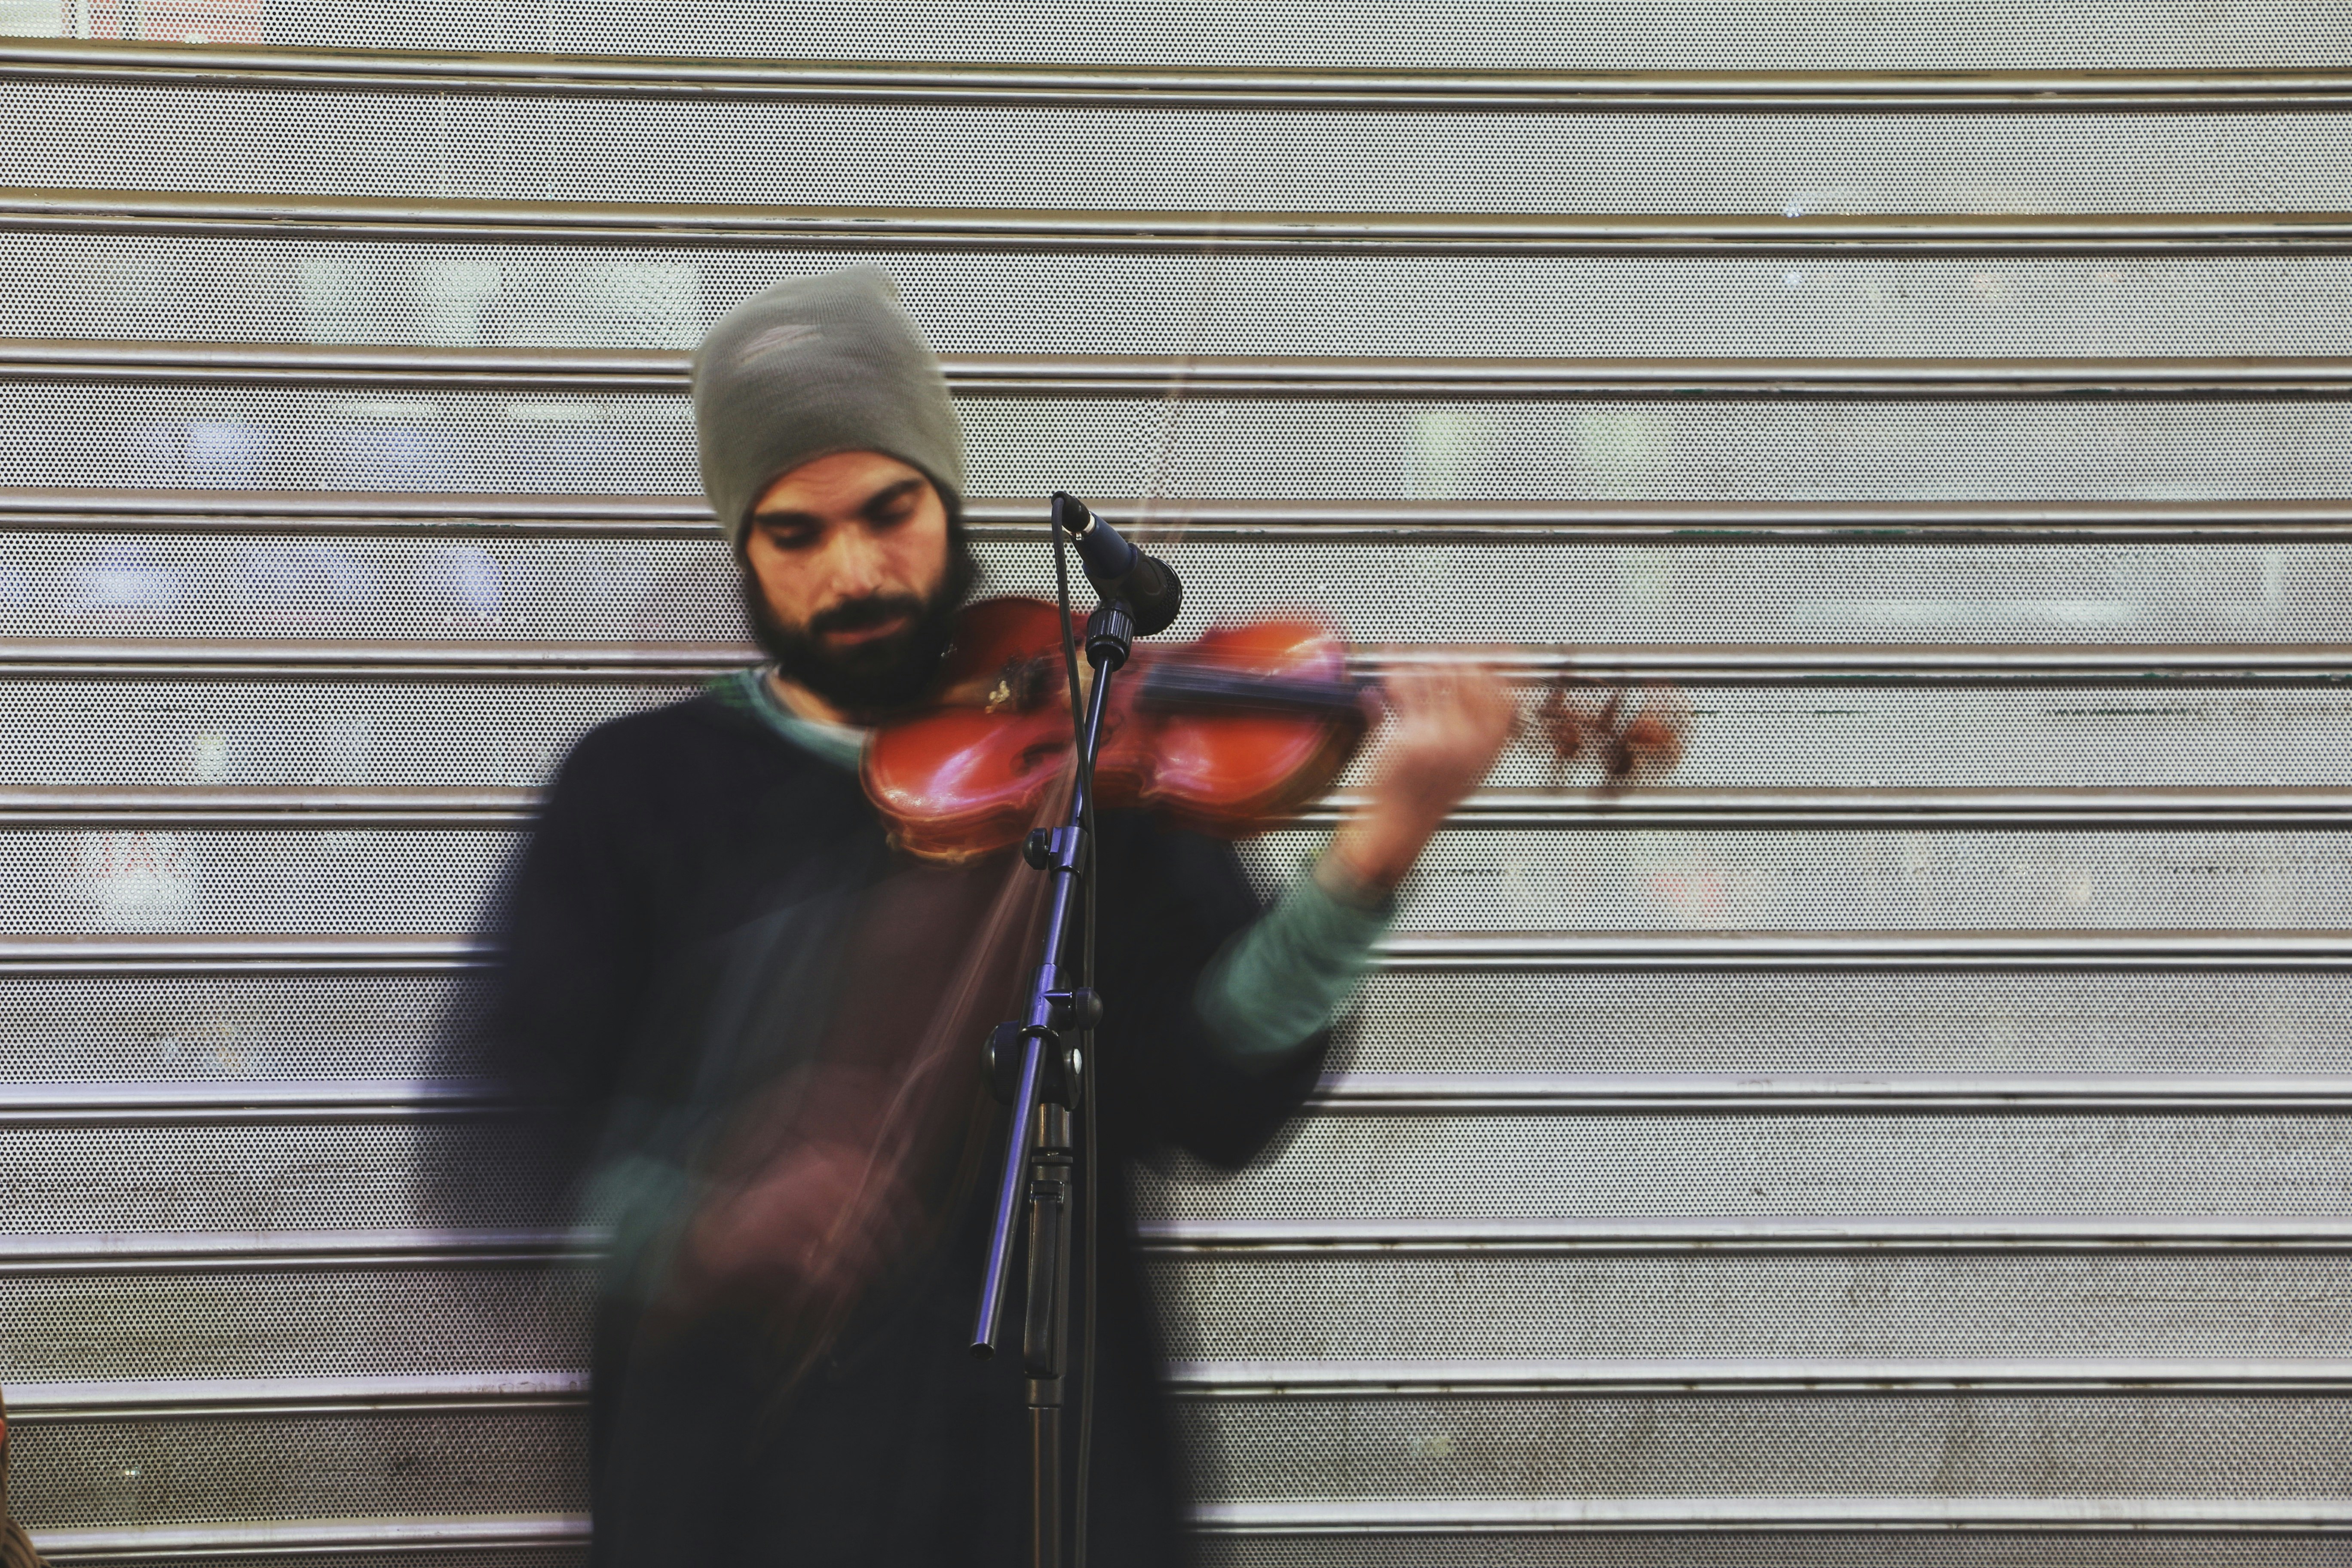 man playing violin during daytime